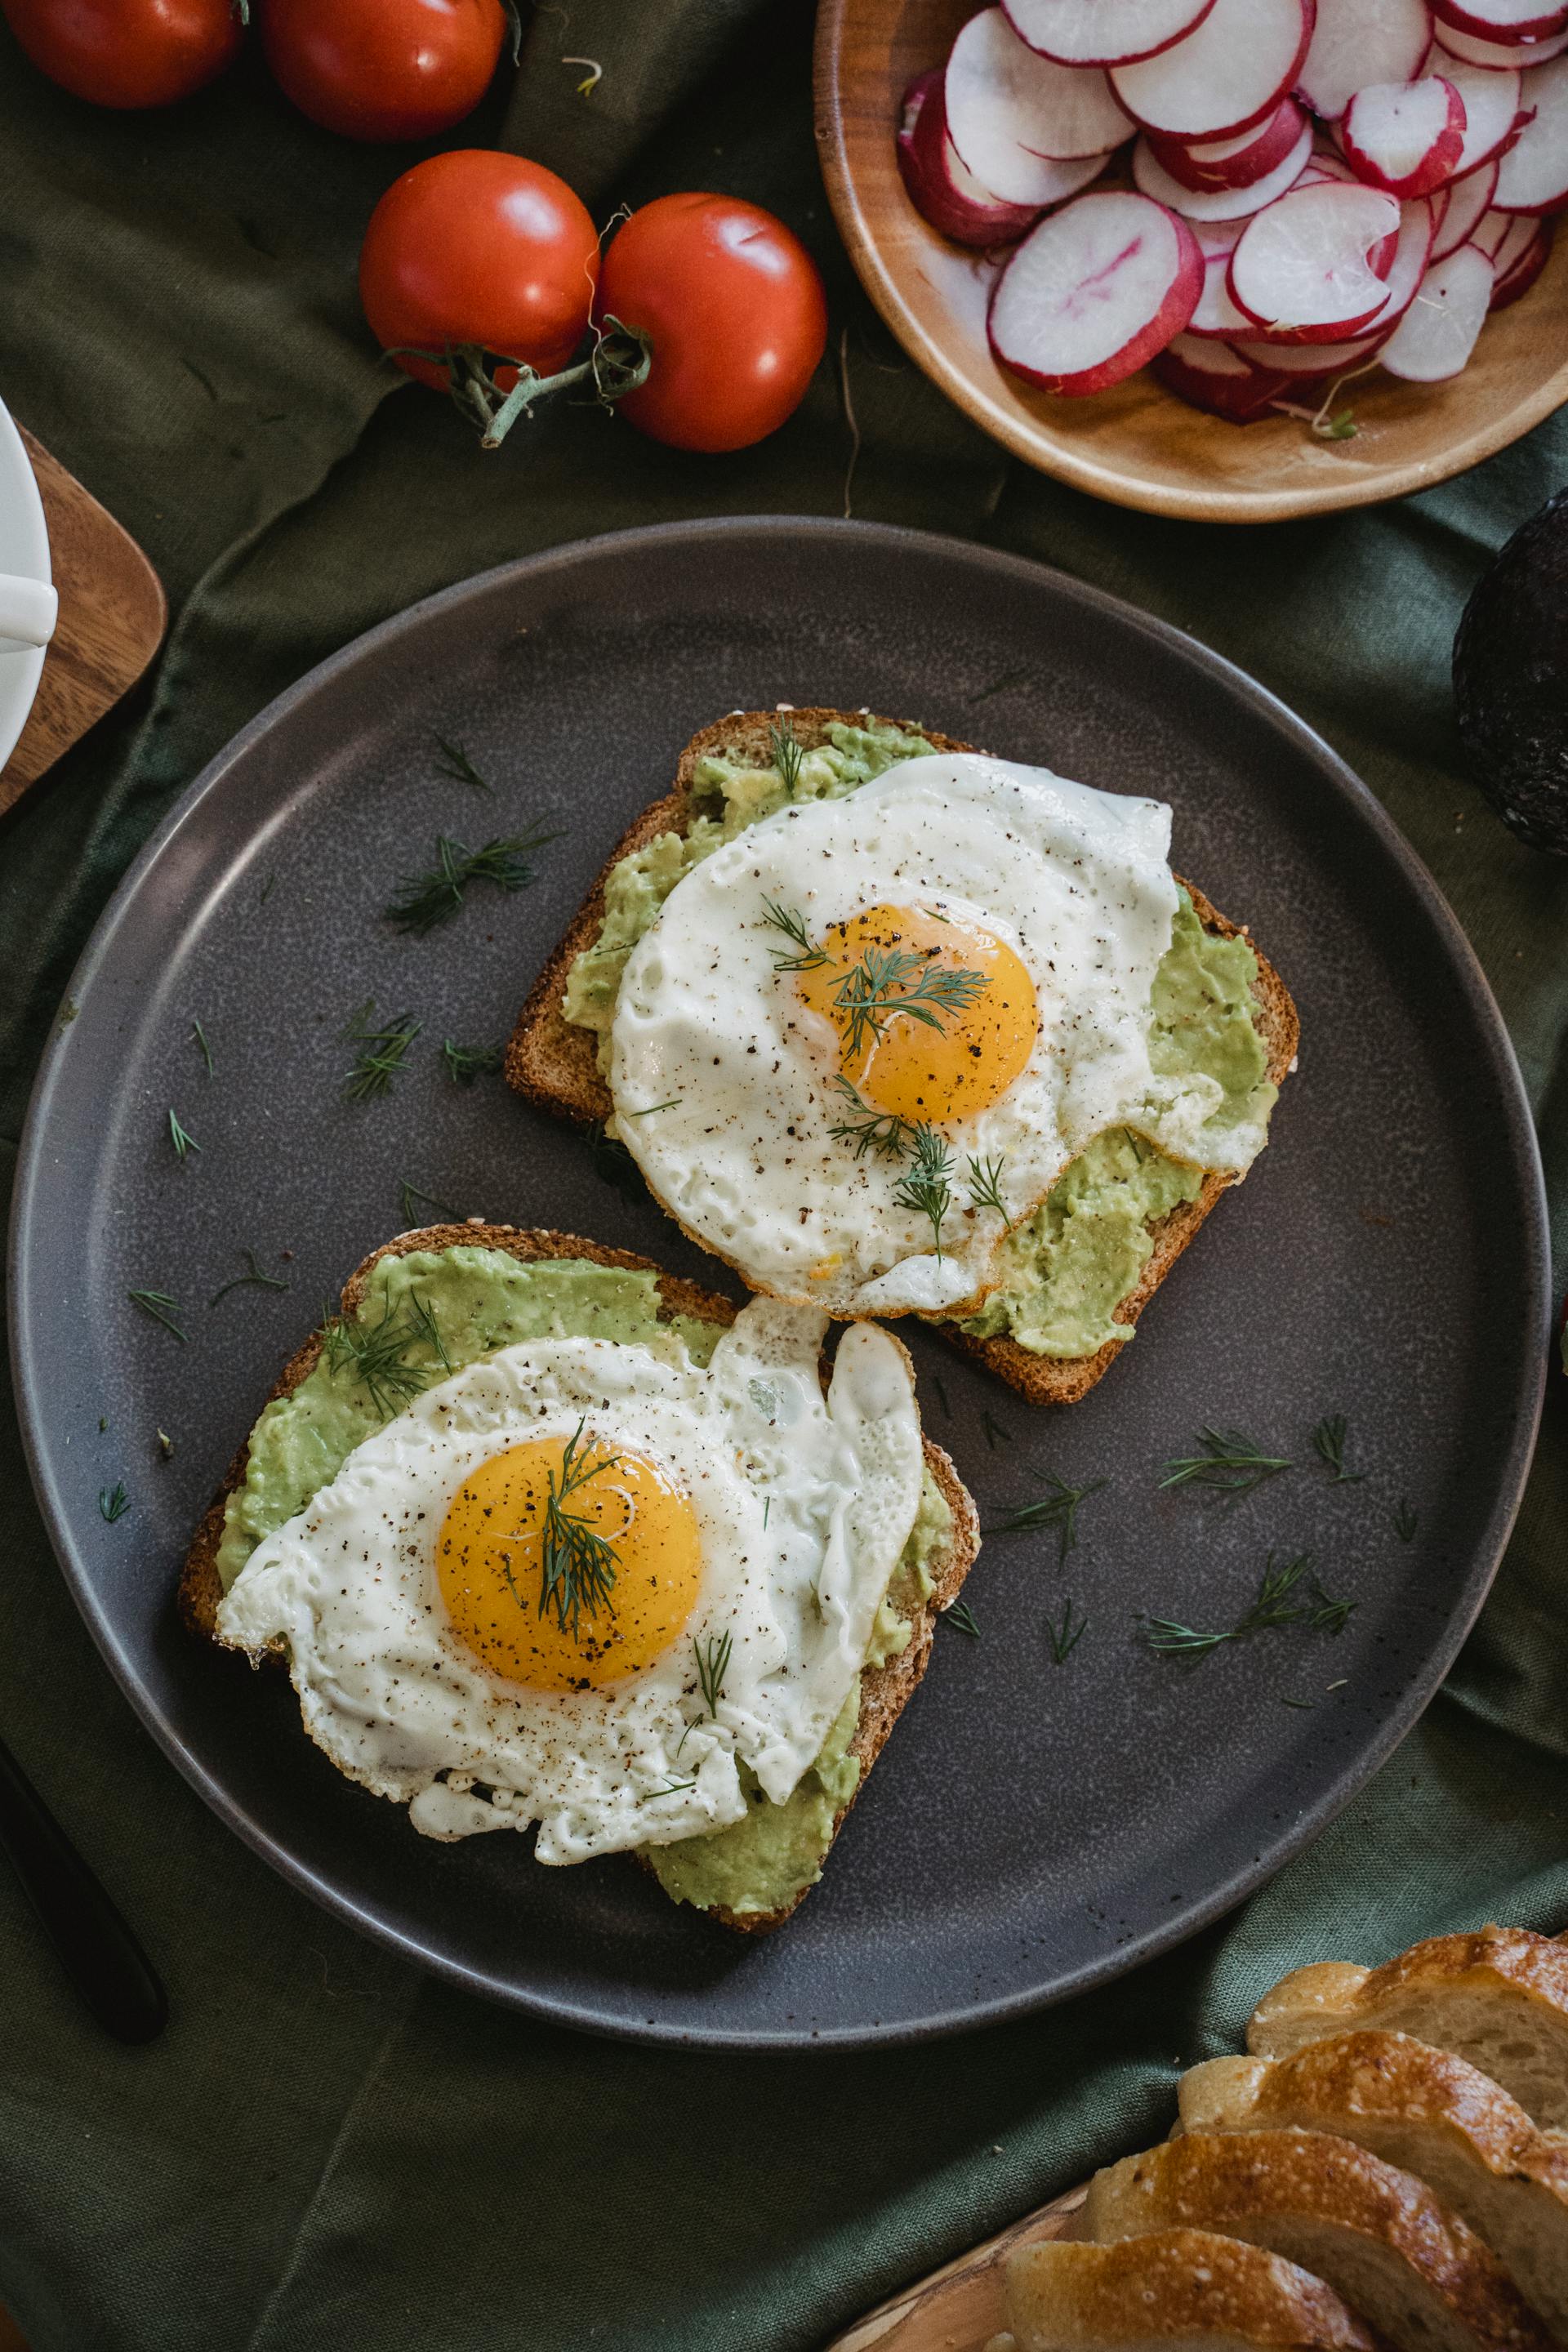 Une assiette d'œufs sur des toasts | Source : Pexels